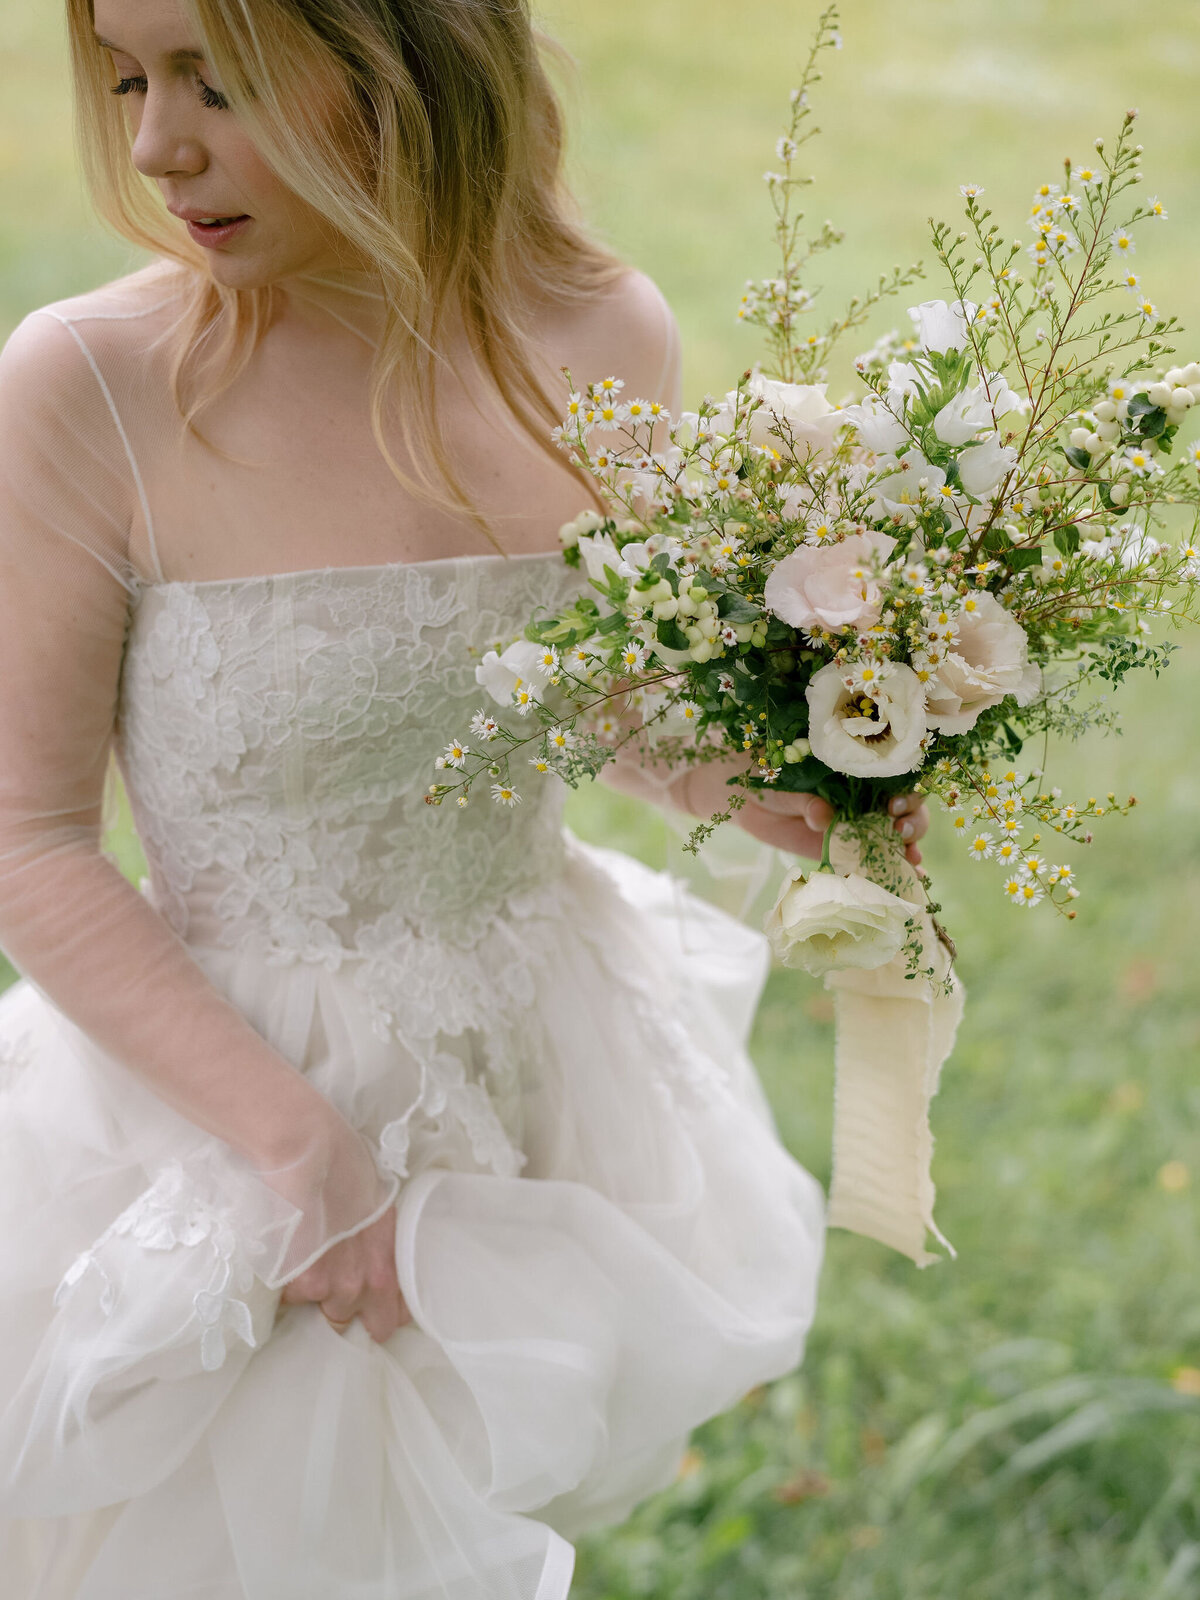 Romantic Bride Holding Bridal Bouquet